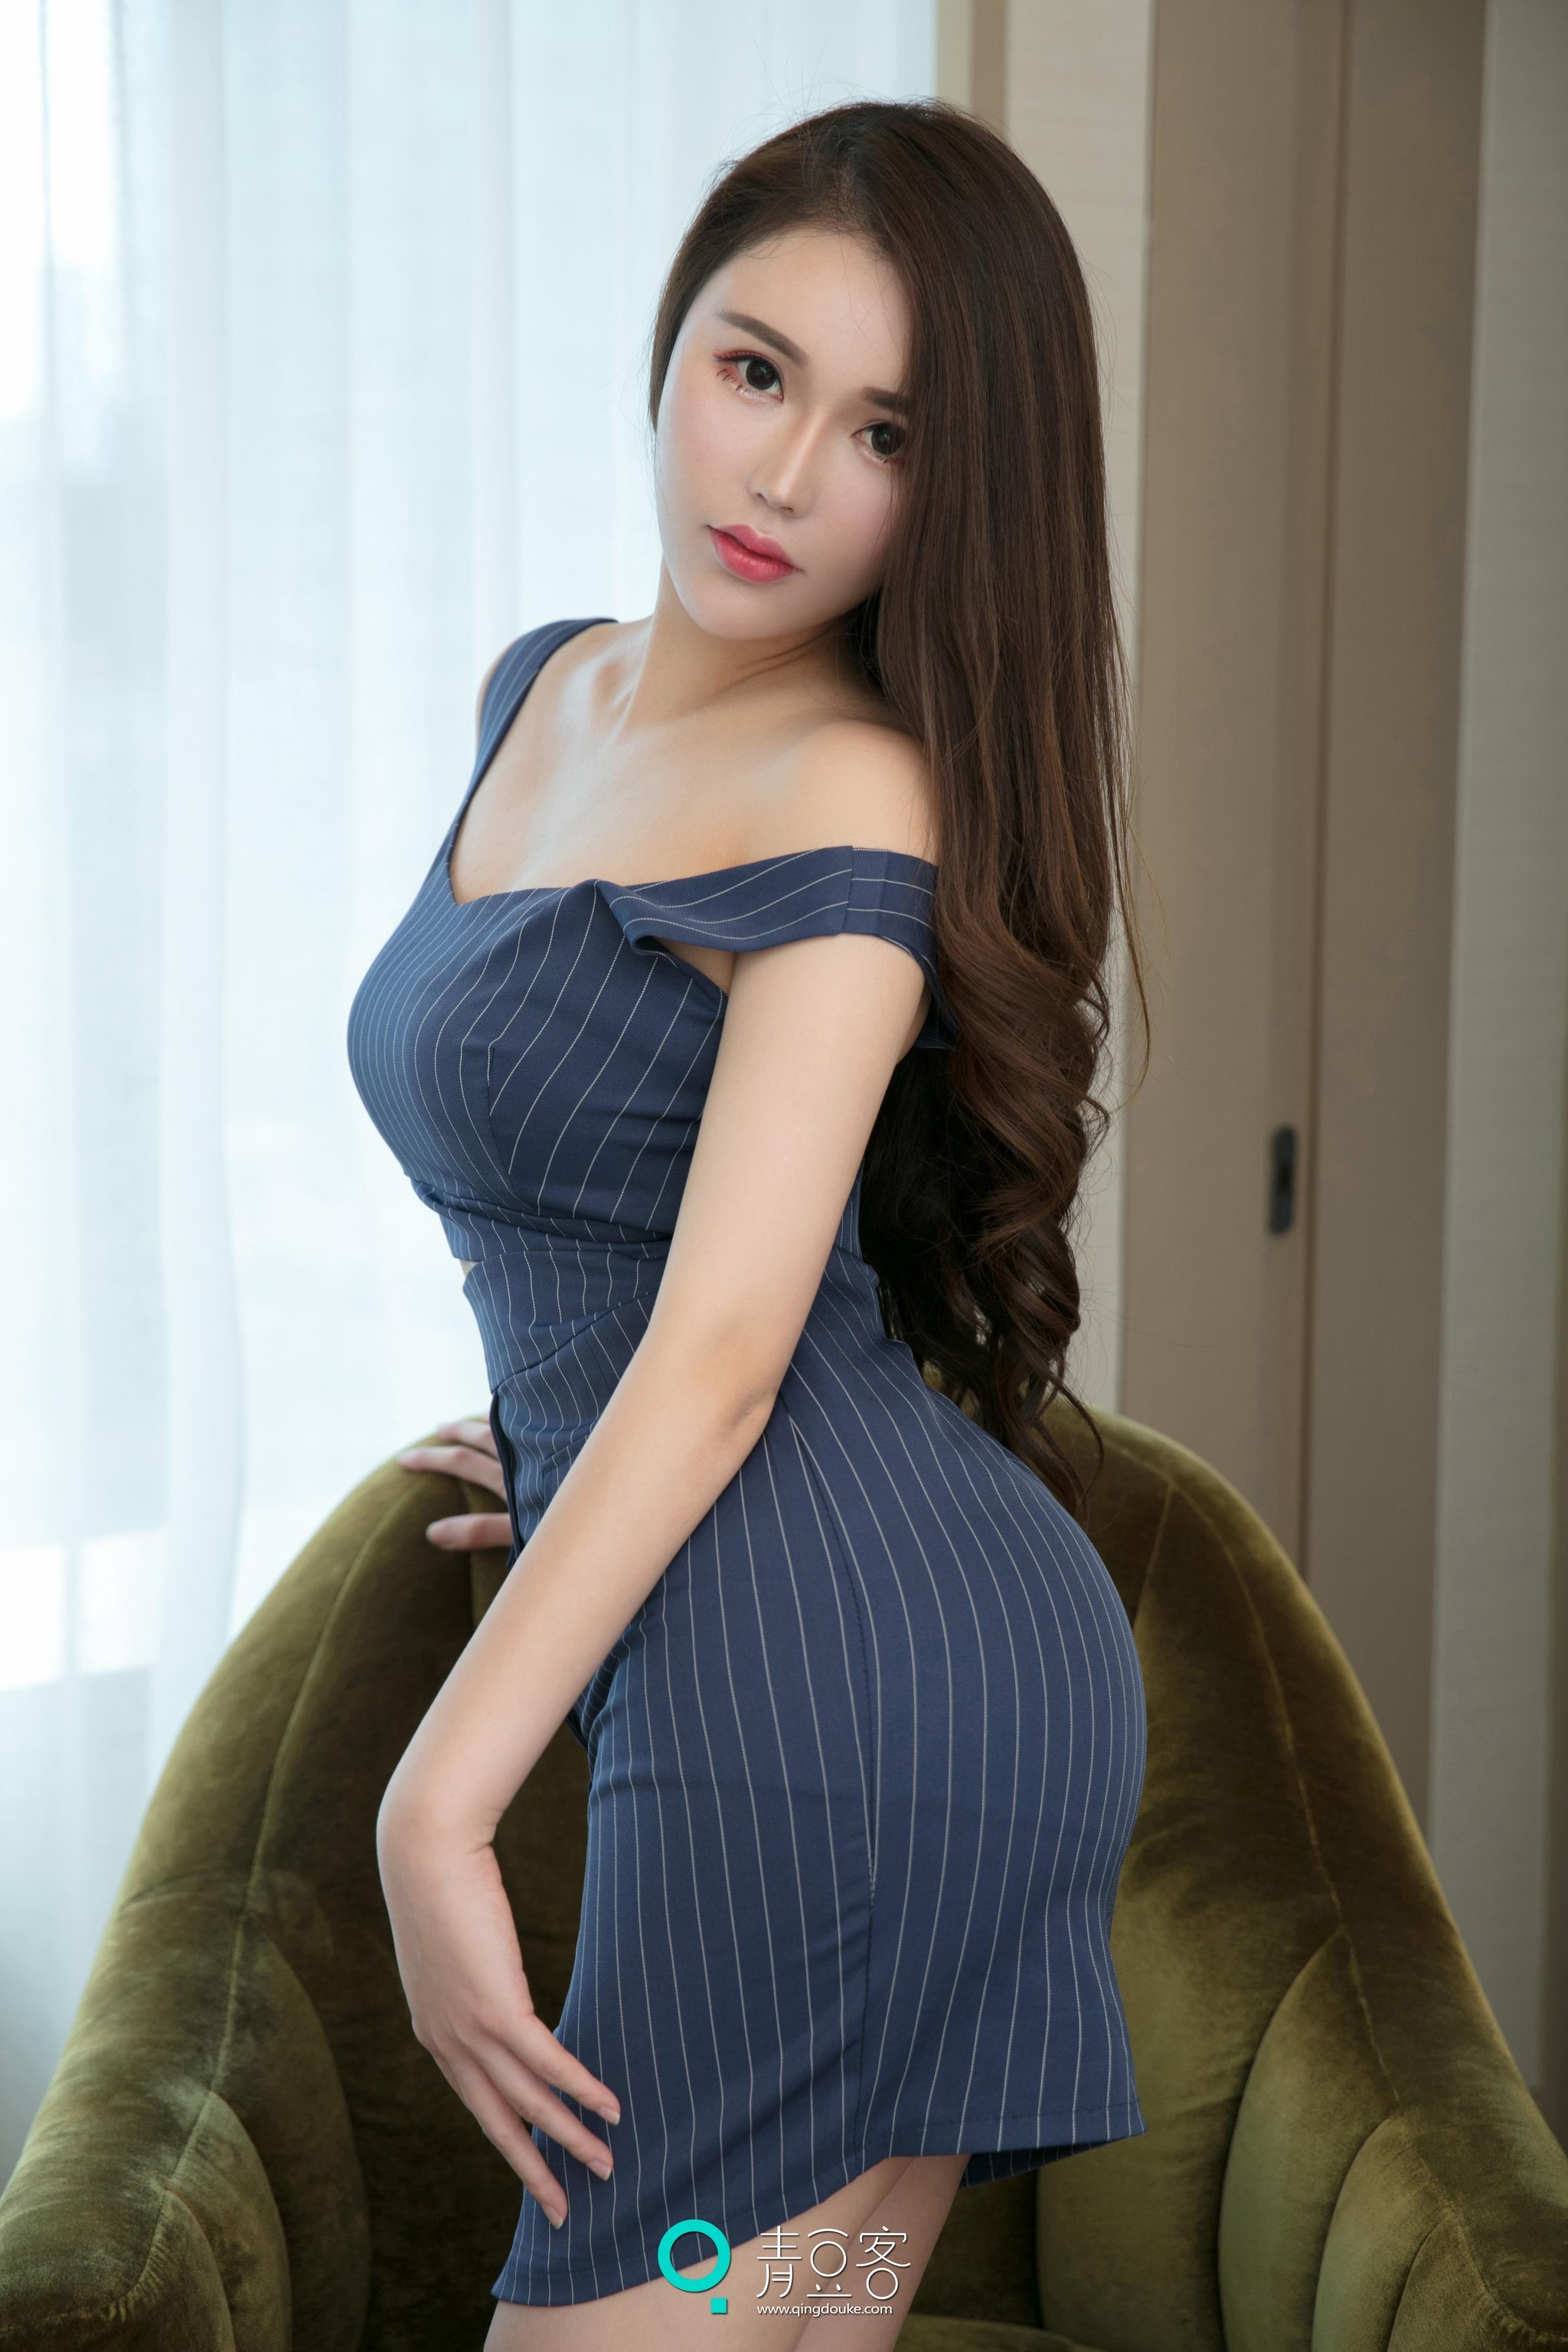 [QingDouKe青豆客]2017-10-14 肉蛋 蓝色OL制服裙与白色蕾丝透视睡衣及黑色情趣塑身内衣性感私房写真集,